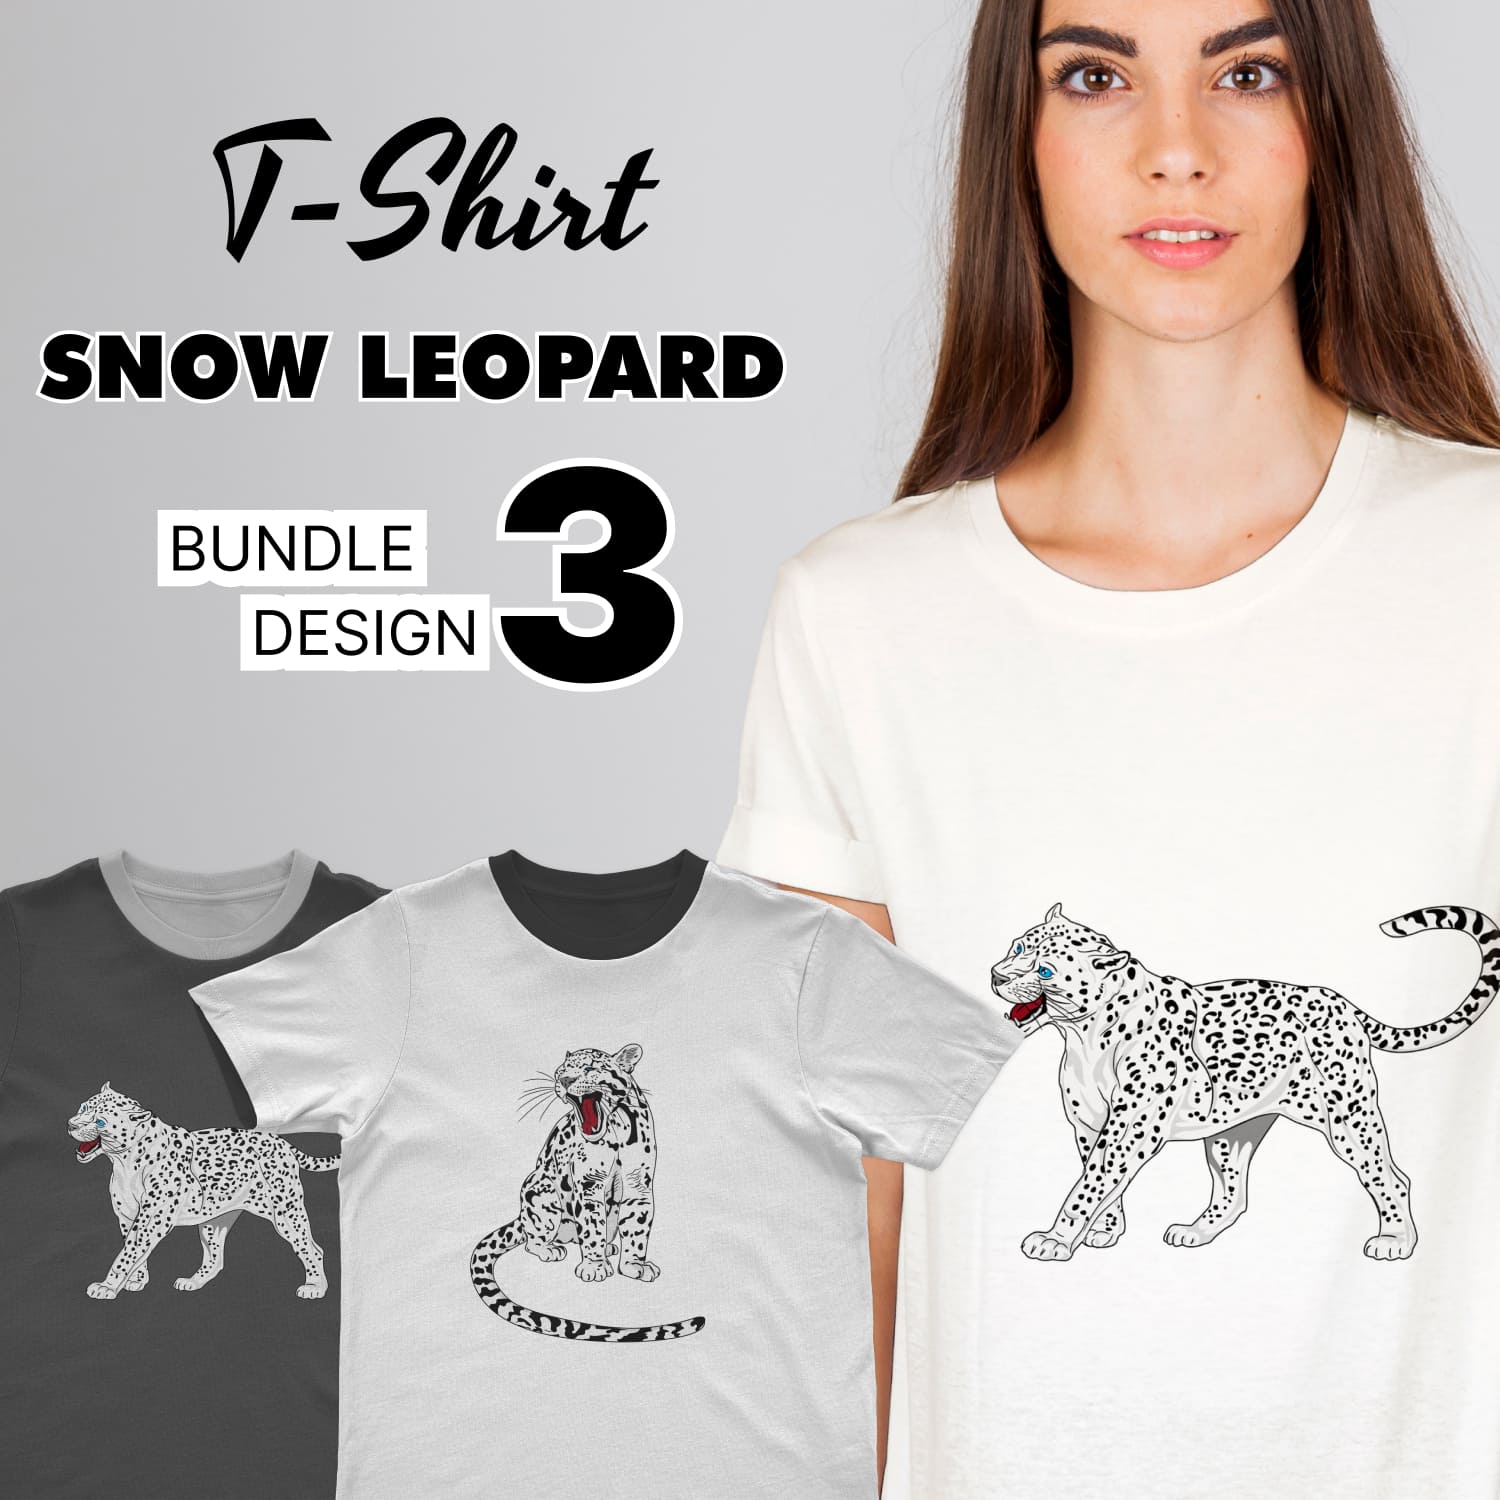 Snow leopard SVG, main picture 1500x1500.